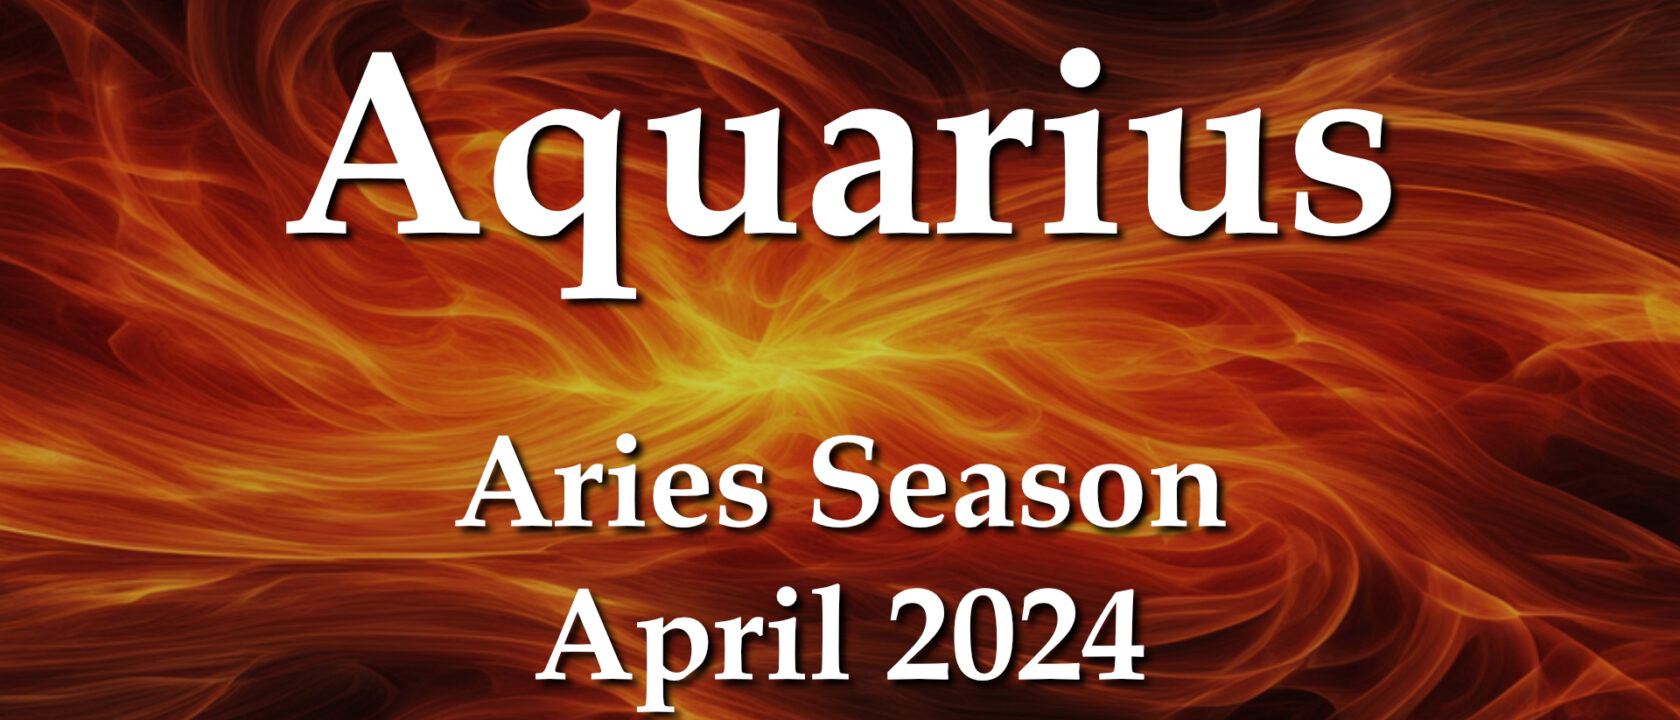 Aquarius – Aries Season April 2024